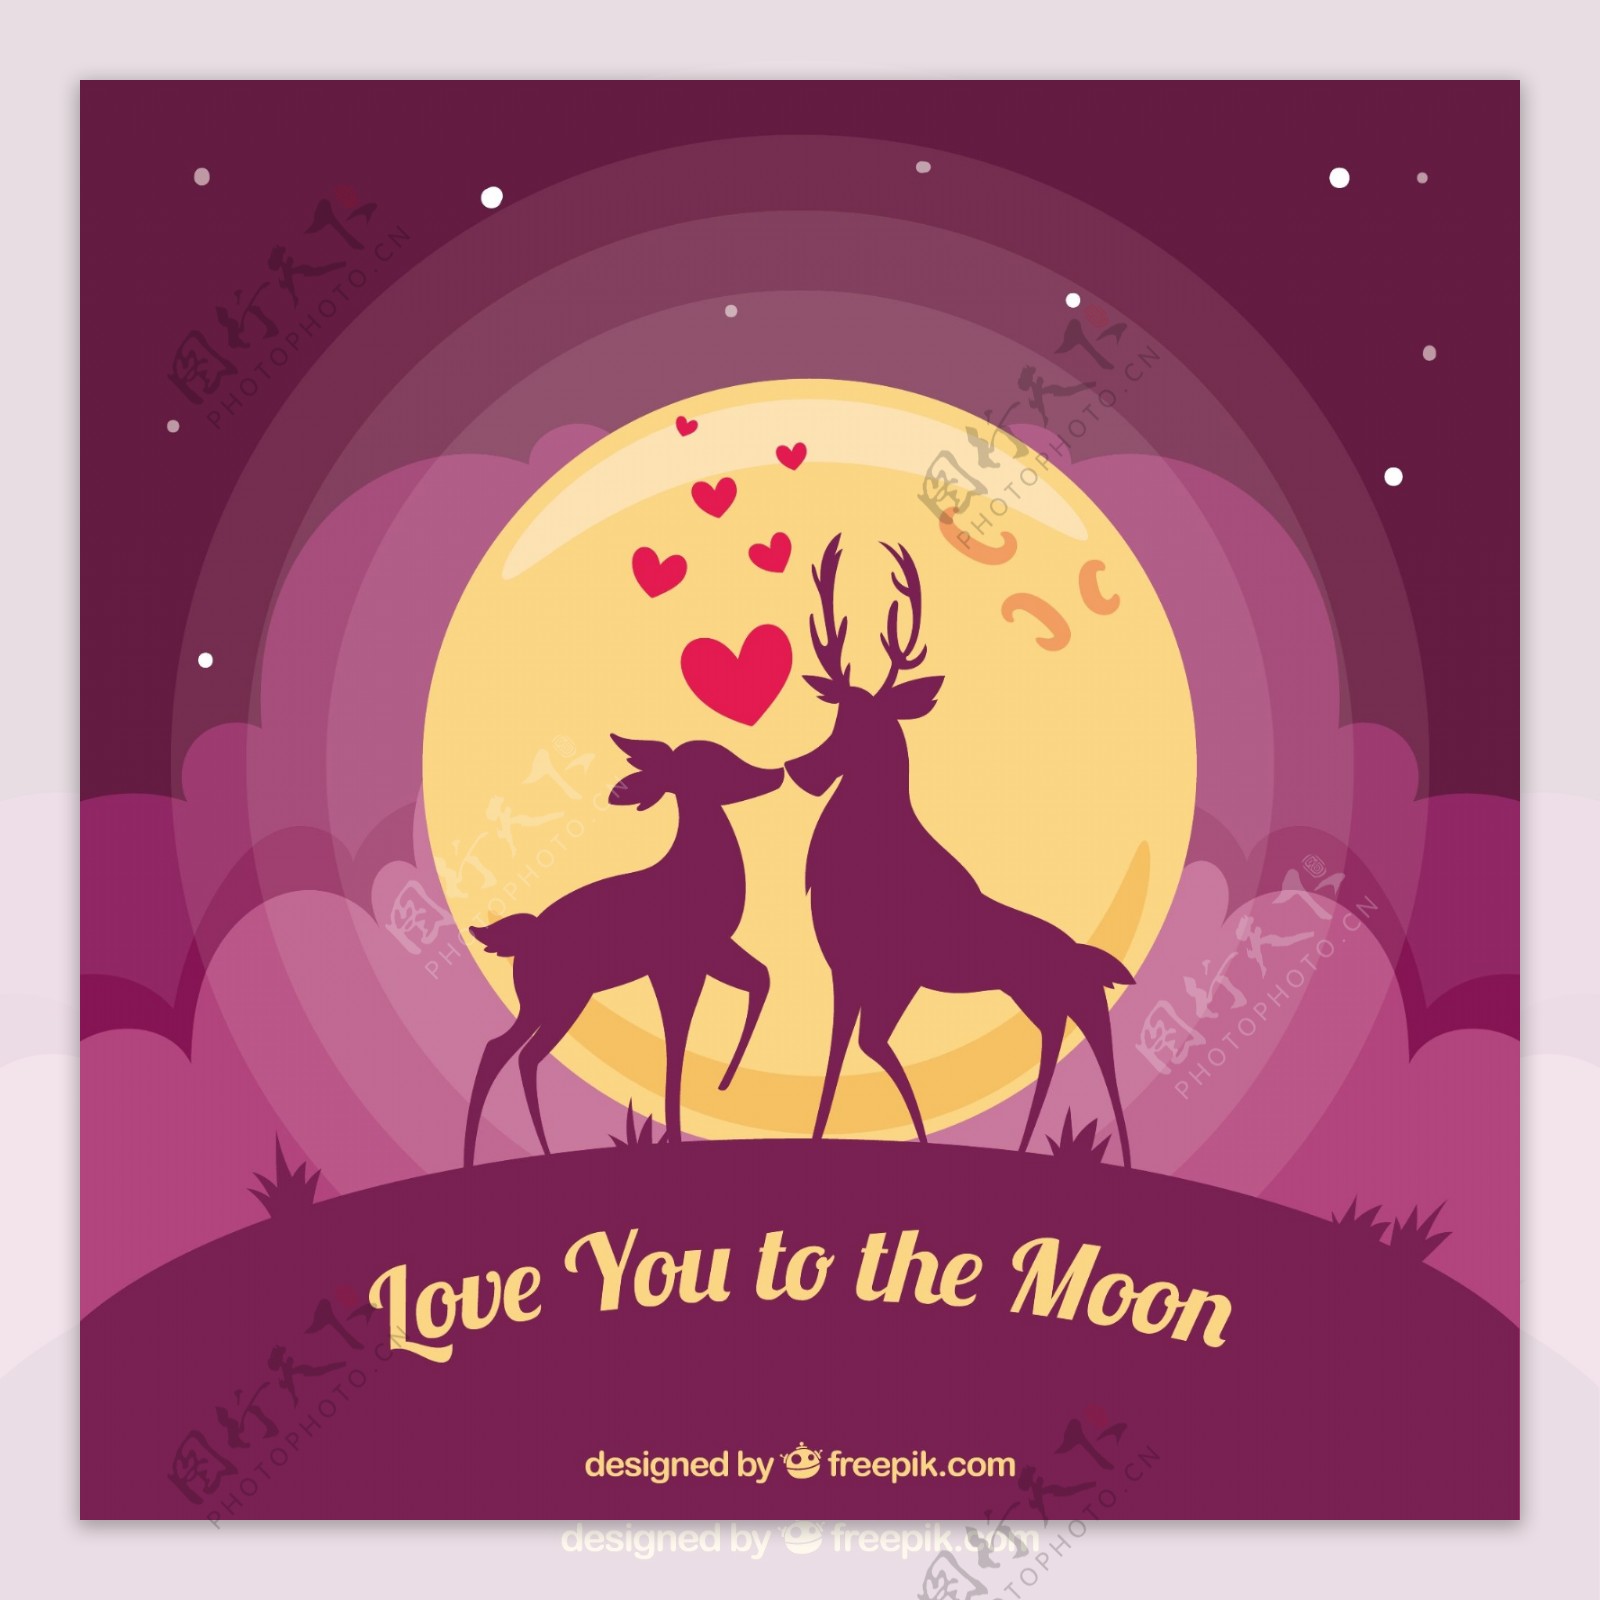 浪漫的鹿背景与浪漫的讯息